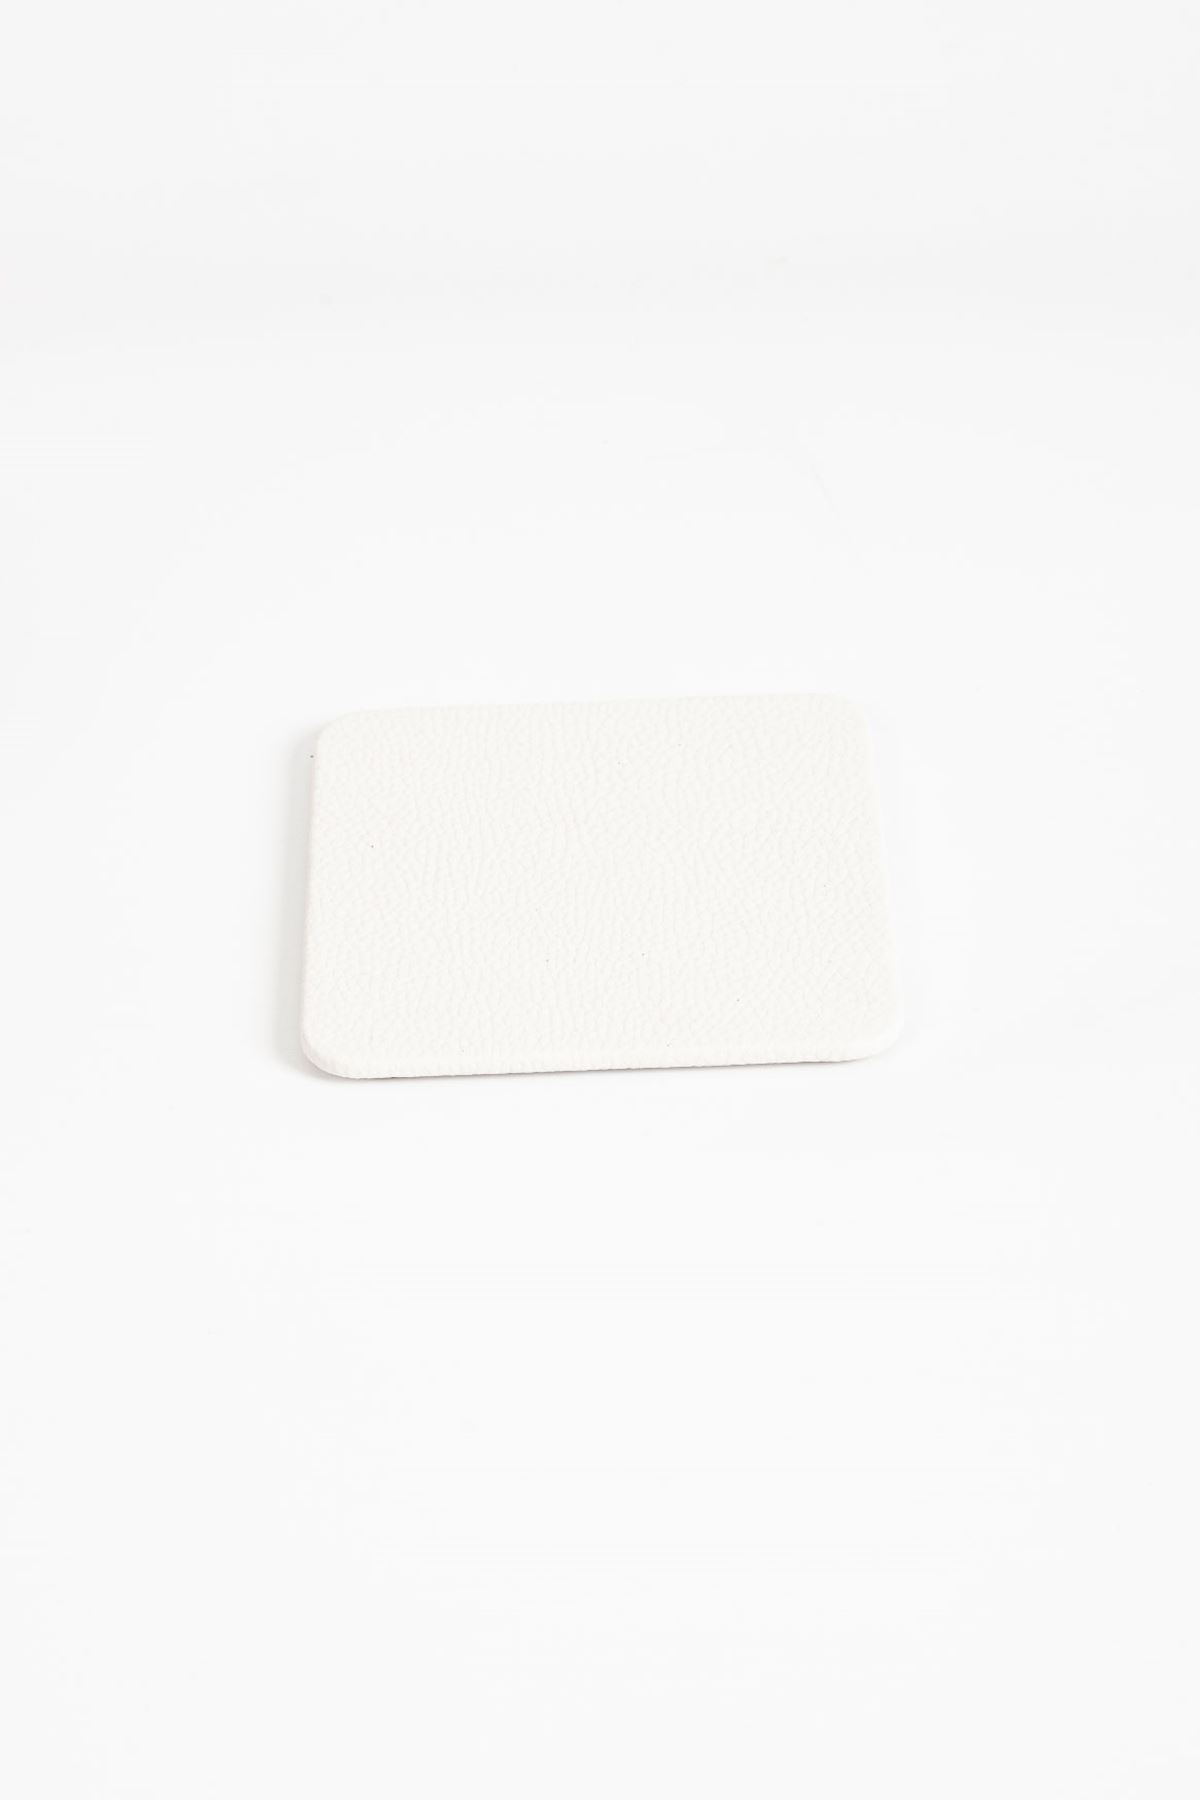 White Leather Coaster 3 Piece